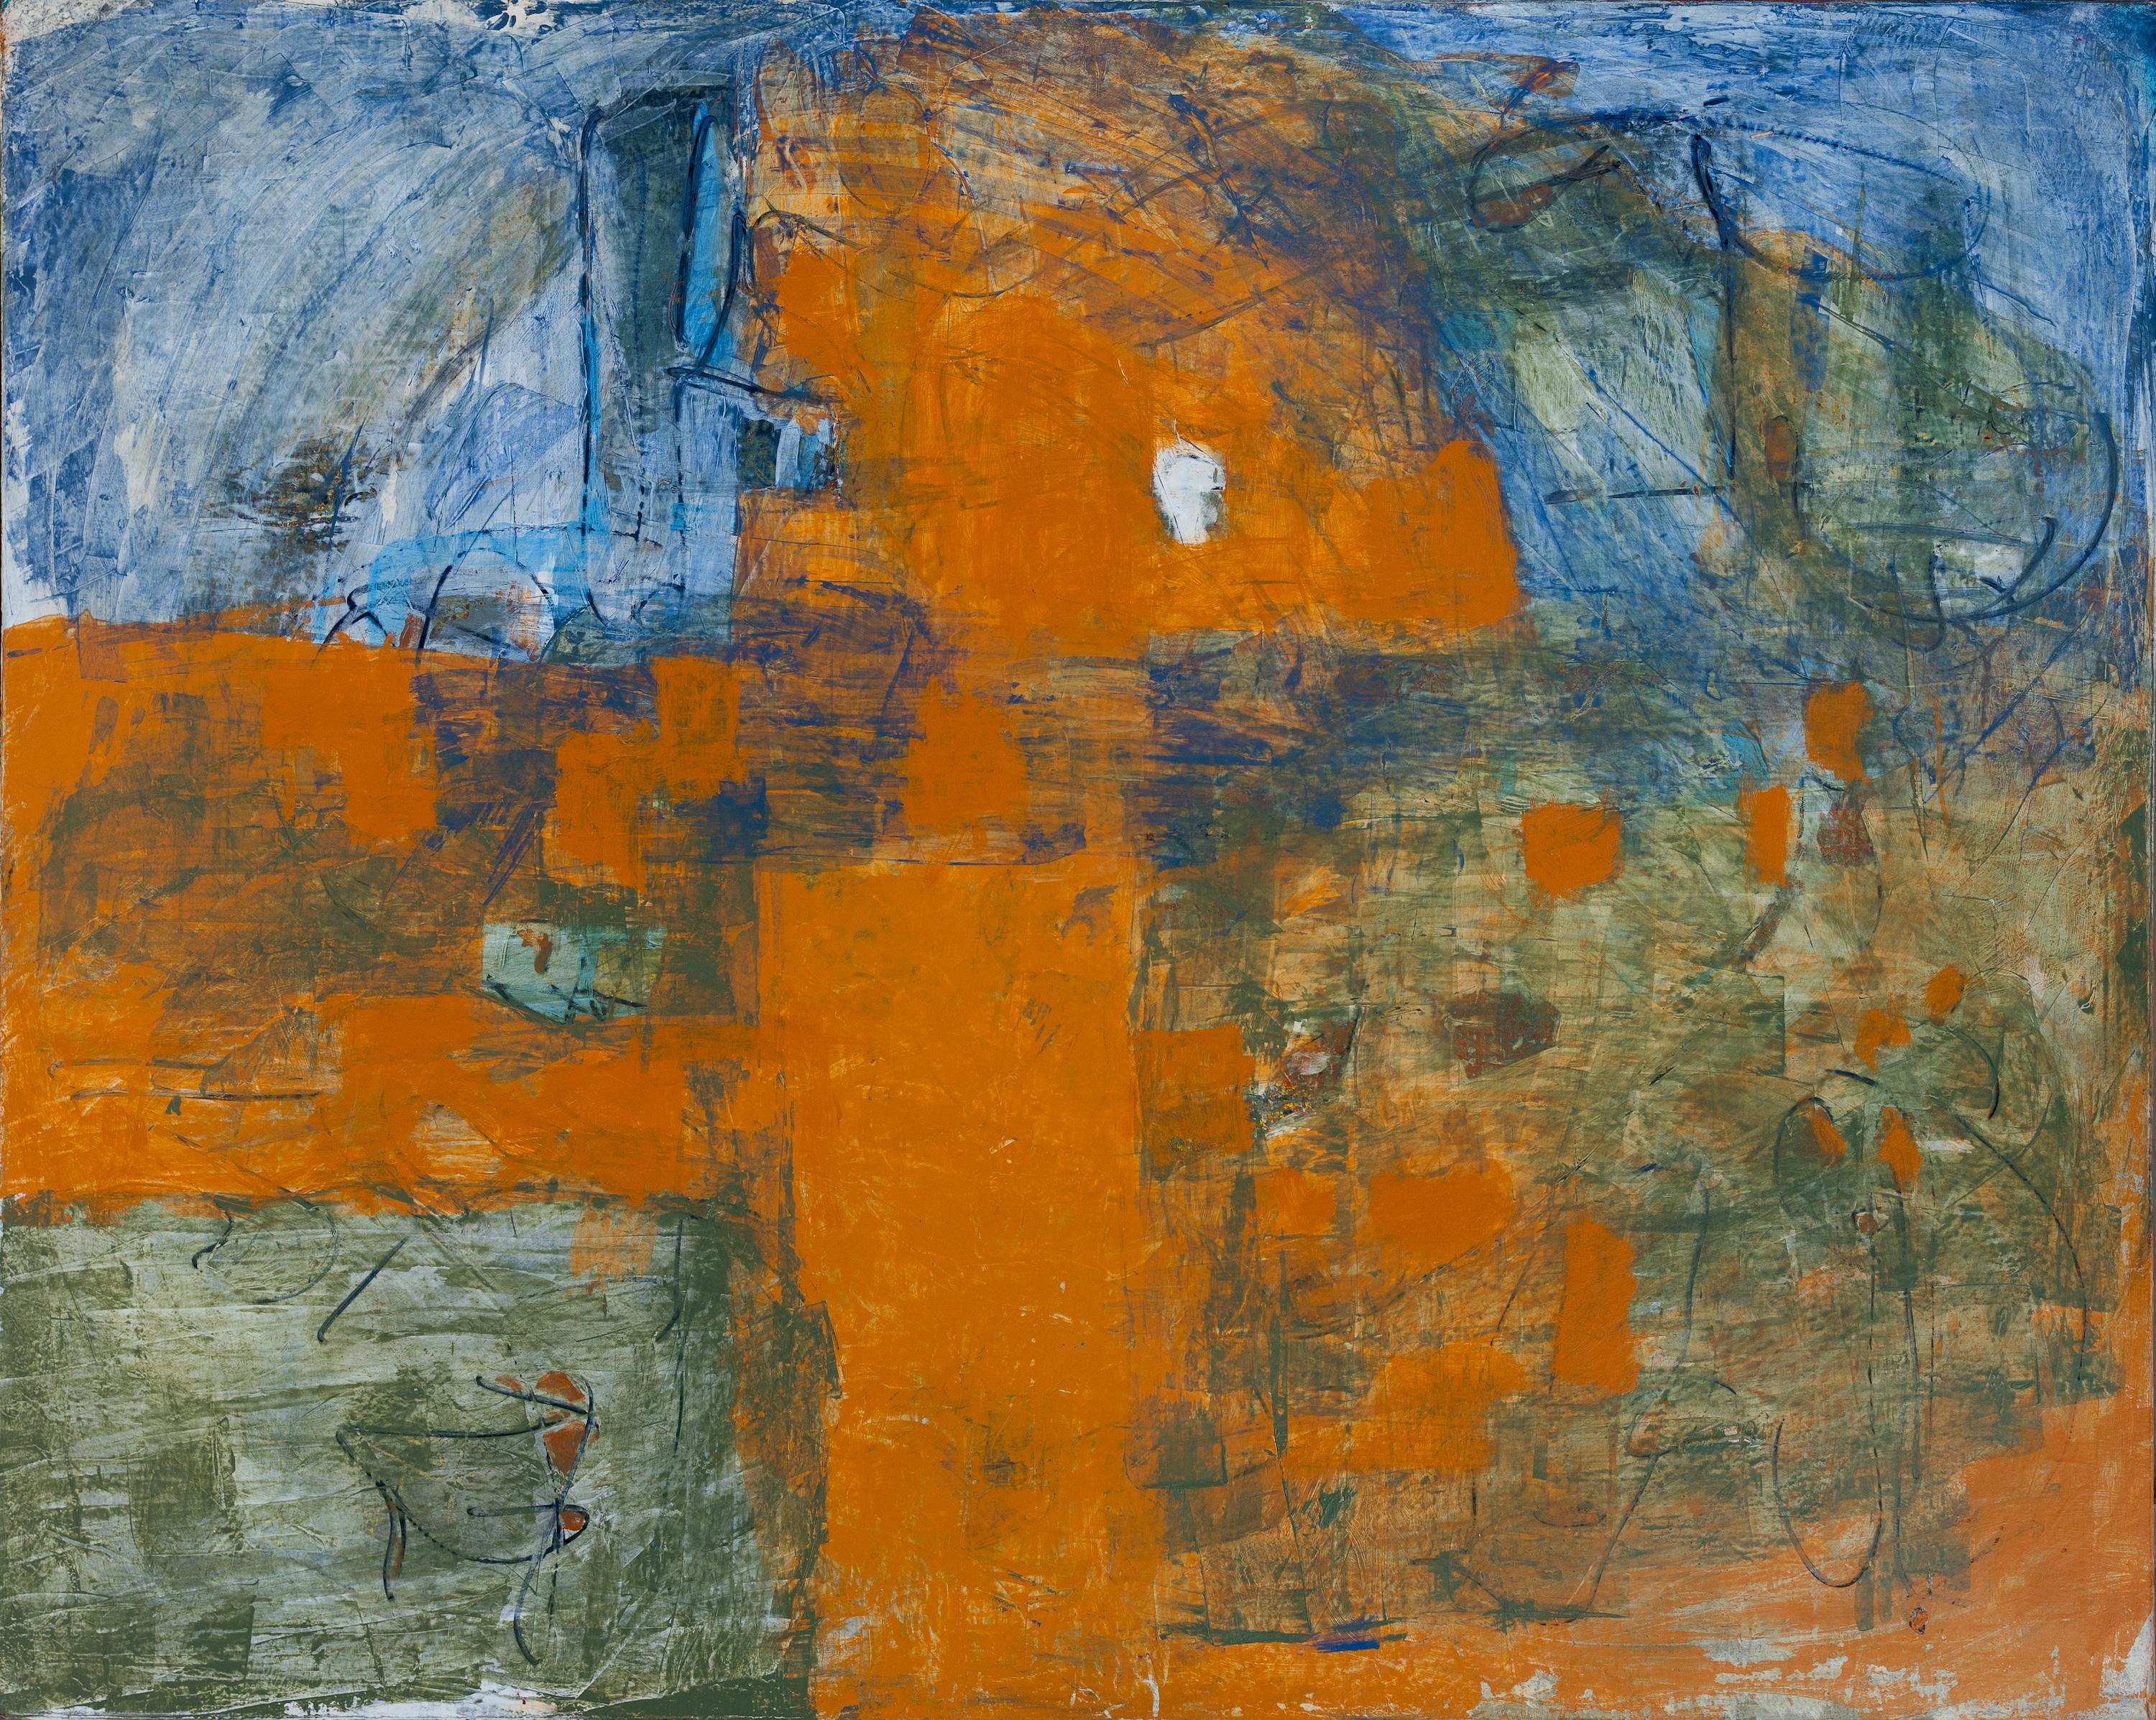 Abstrait bleu et orange avec accents verts par Tom Reno
Acrylique sur toile  
60